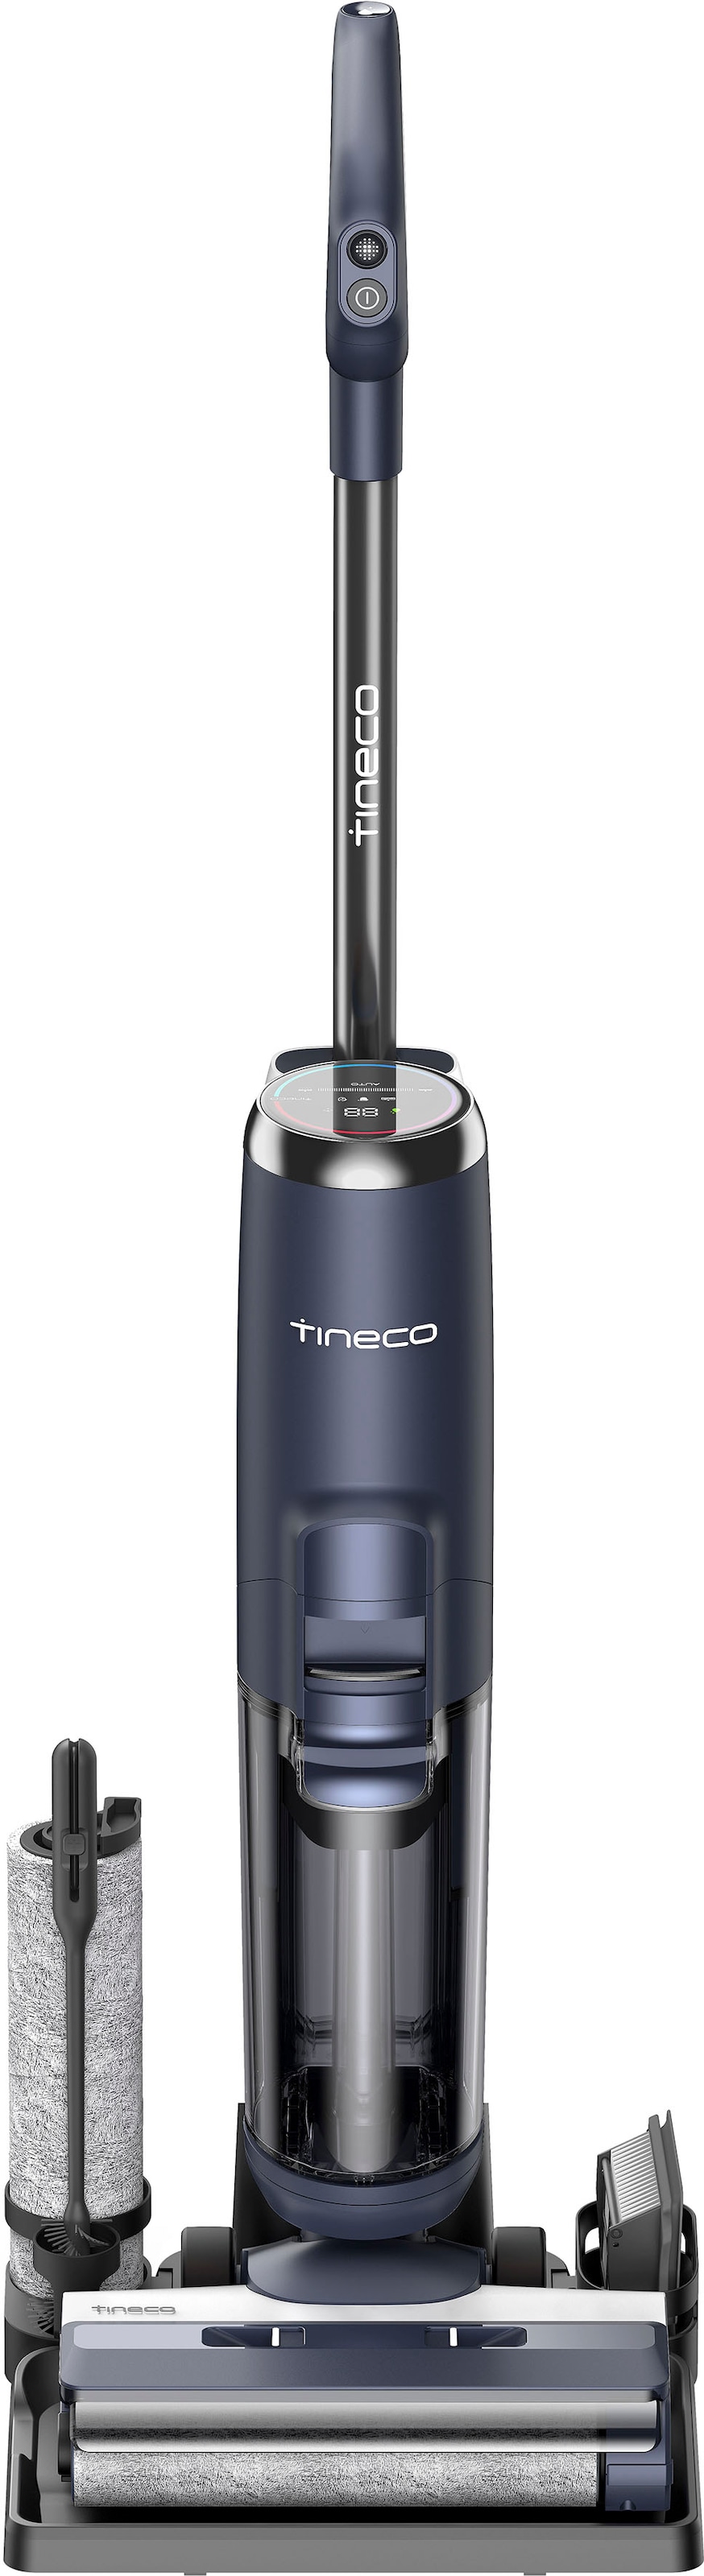 Tineco Nass-Trocken-Sauger »Floor One S5 Extreme Nass-Trocken-Sauger, mit Kantenreinigung«, automatische Anpassung der Saugleistung, mit Selbstreinigung, kabellos